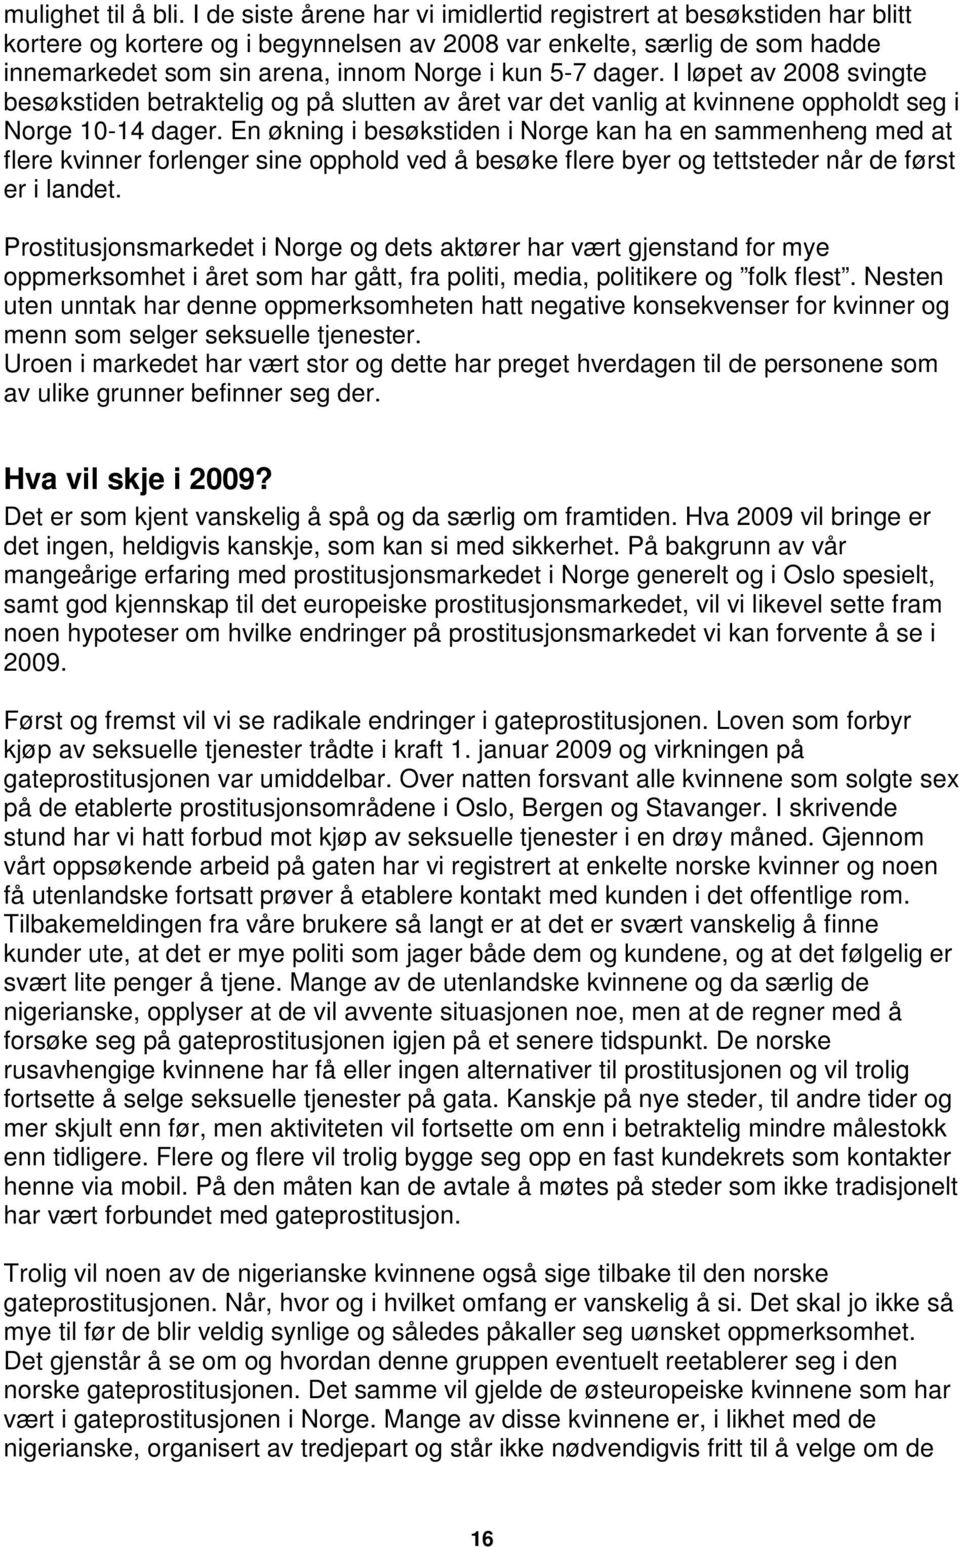 dager. I løpet av 2008 svingte besøkstiden betraktelig og på slutten av året var det vanlig at kvinnene oppholdt seg i Norge 10-14 dager.